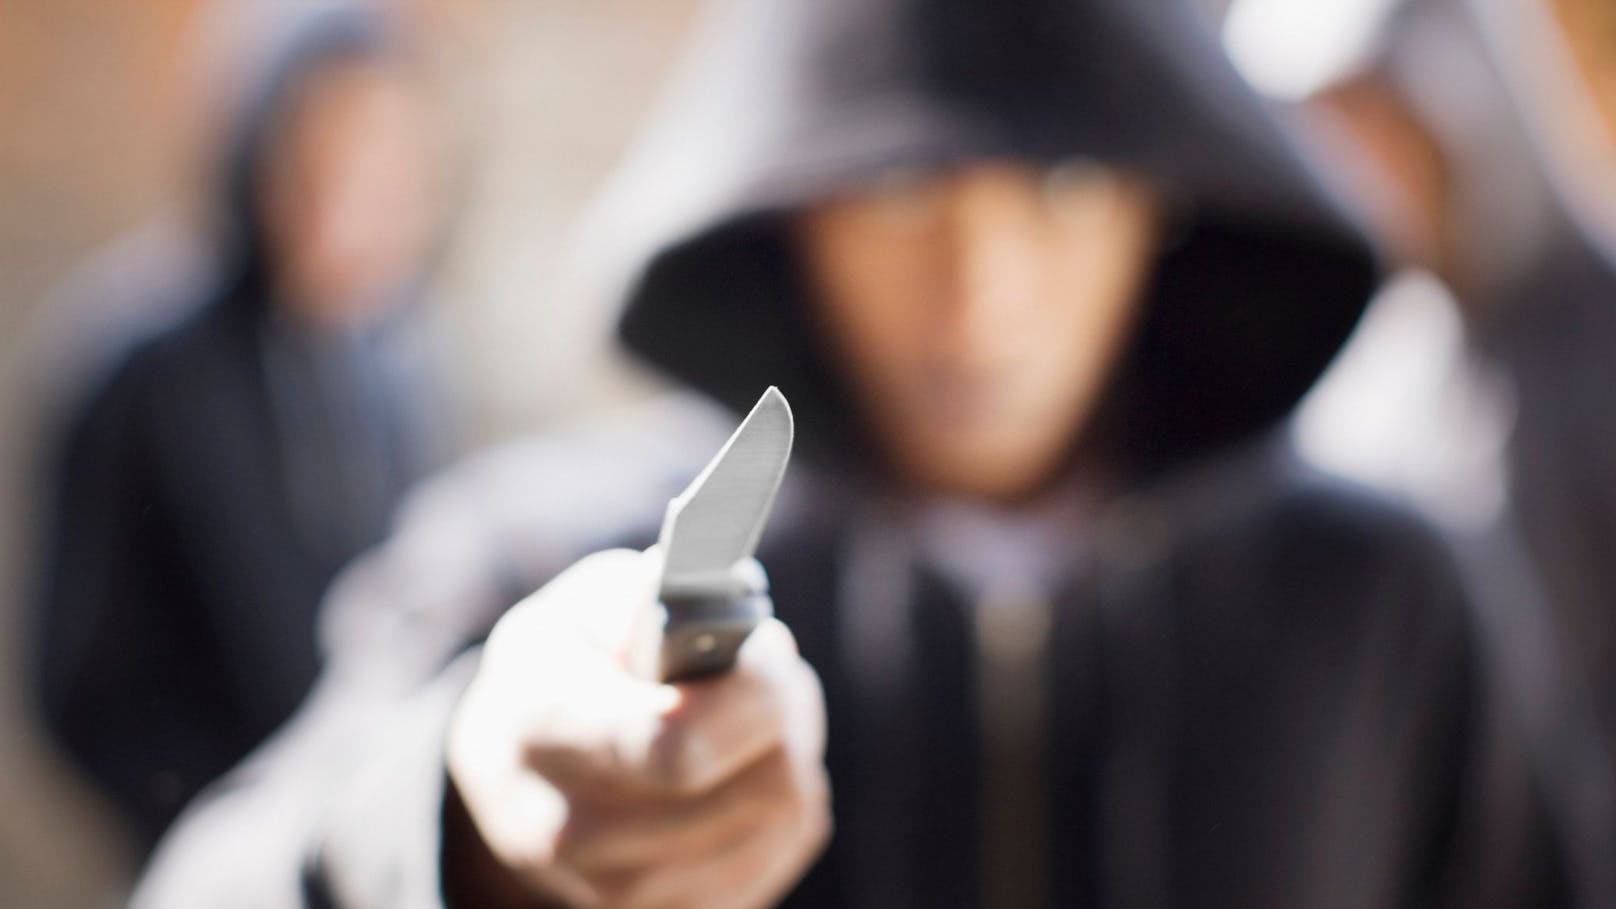 Männer rauben Snapchat-Dealer mit Messer aus – Haft